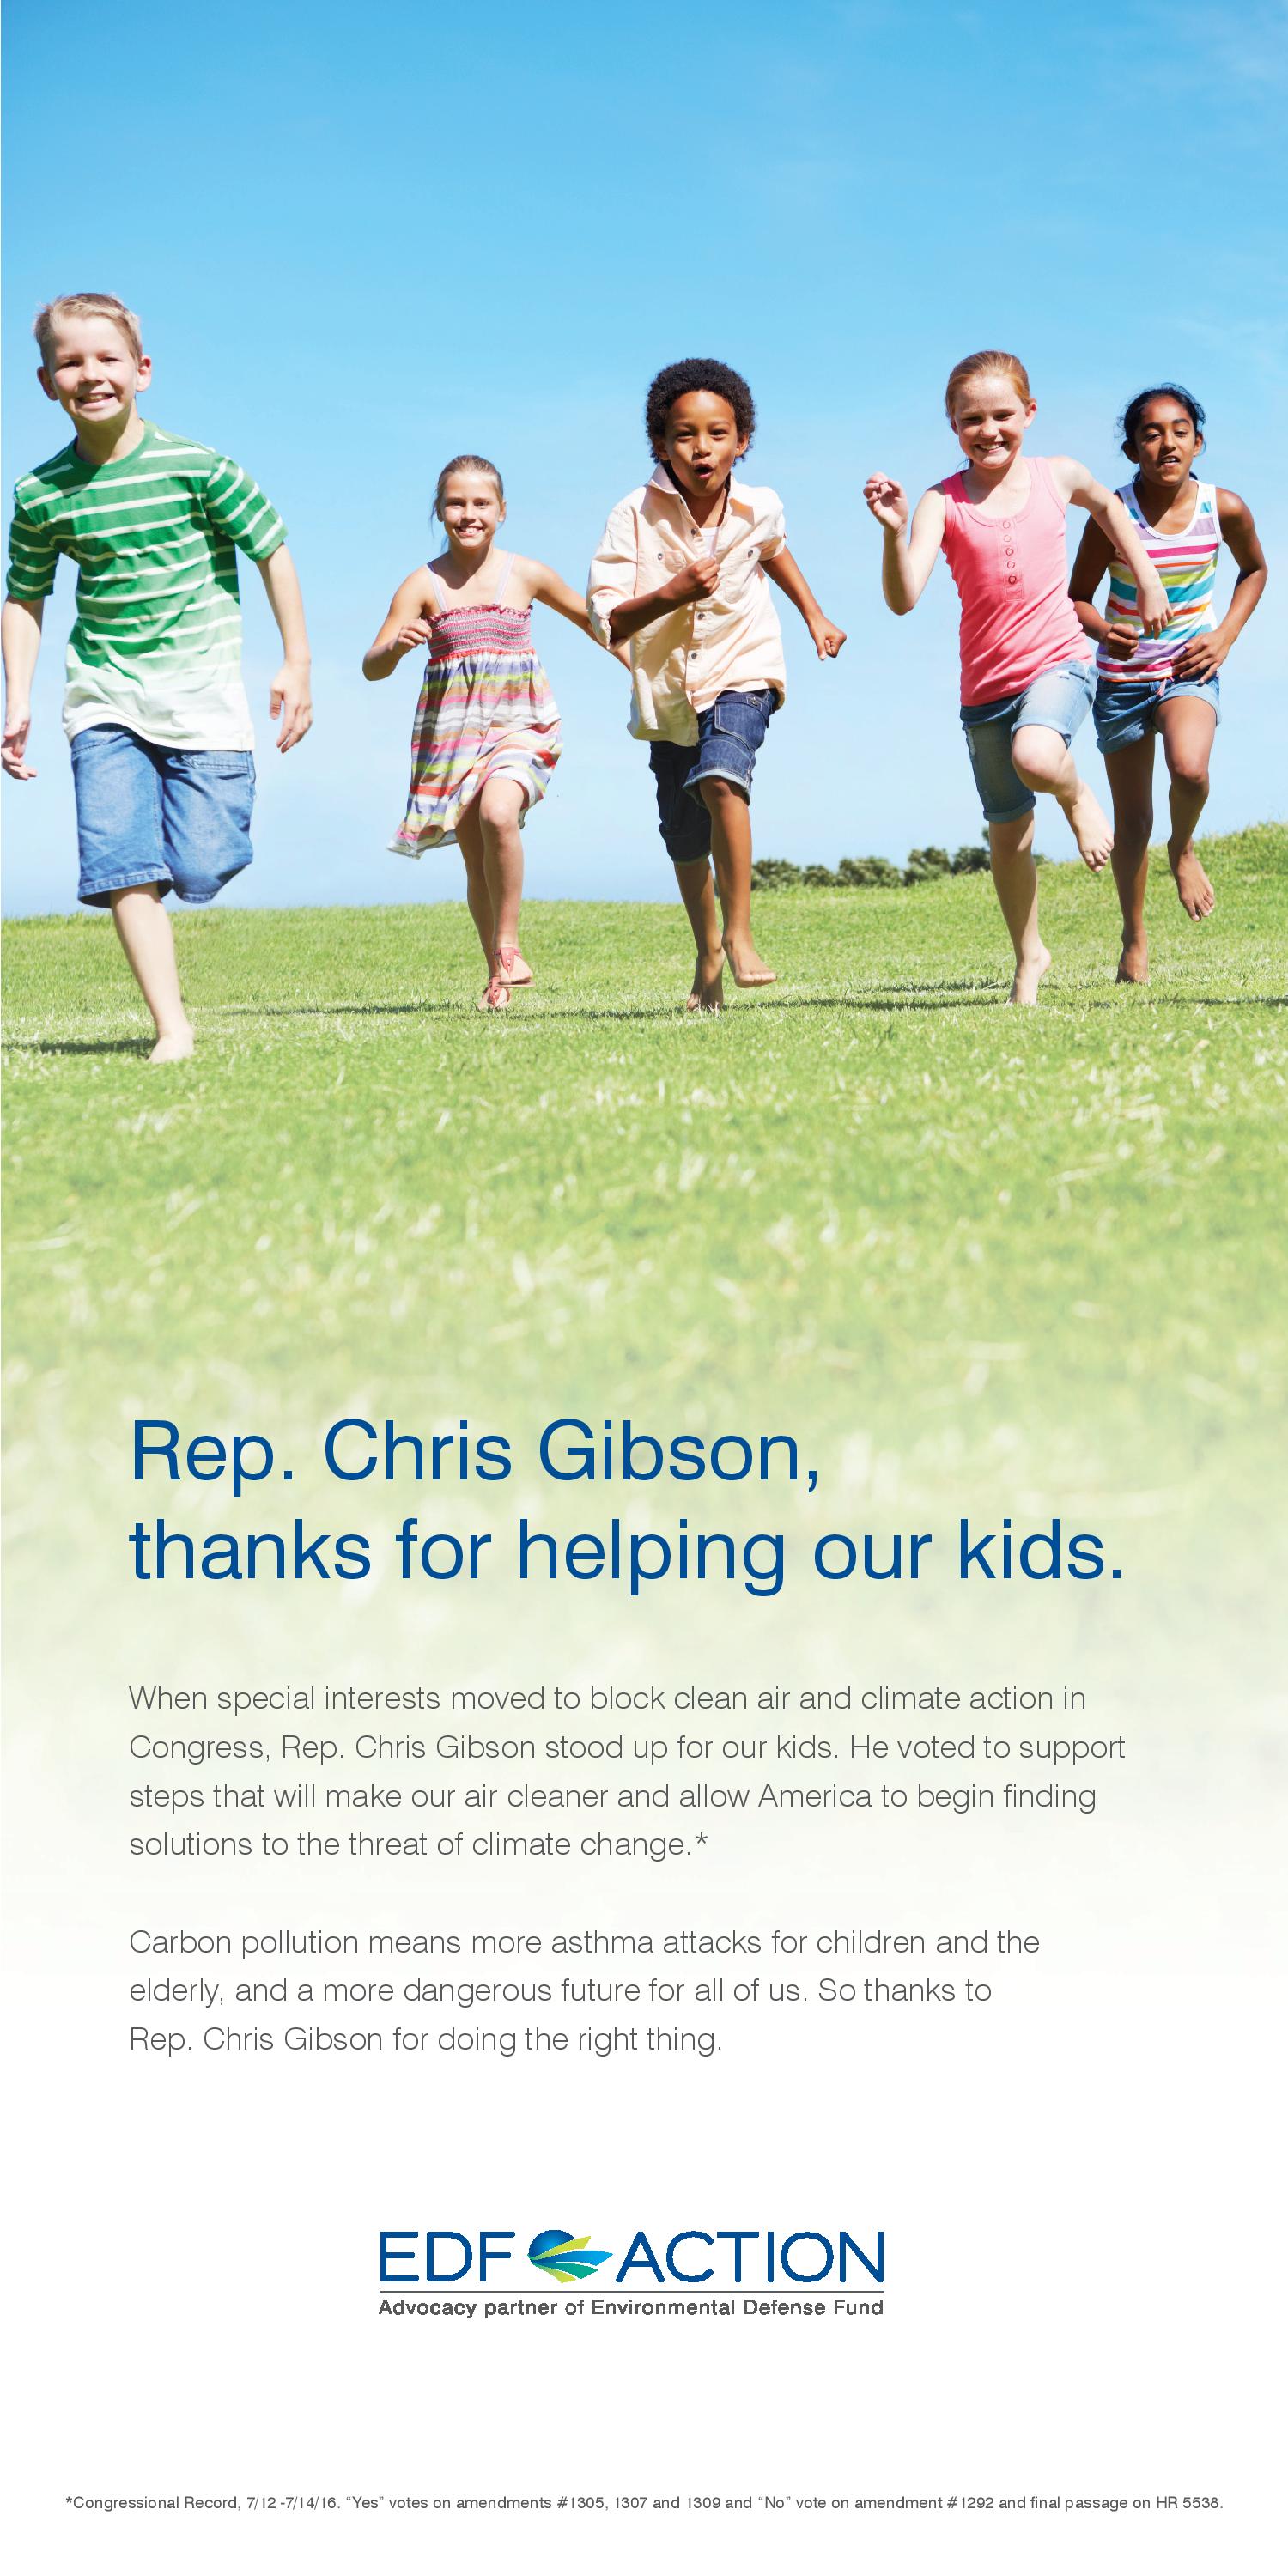 Thank You, Rep. Gibson